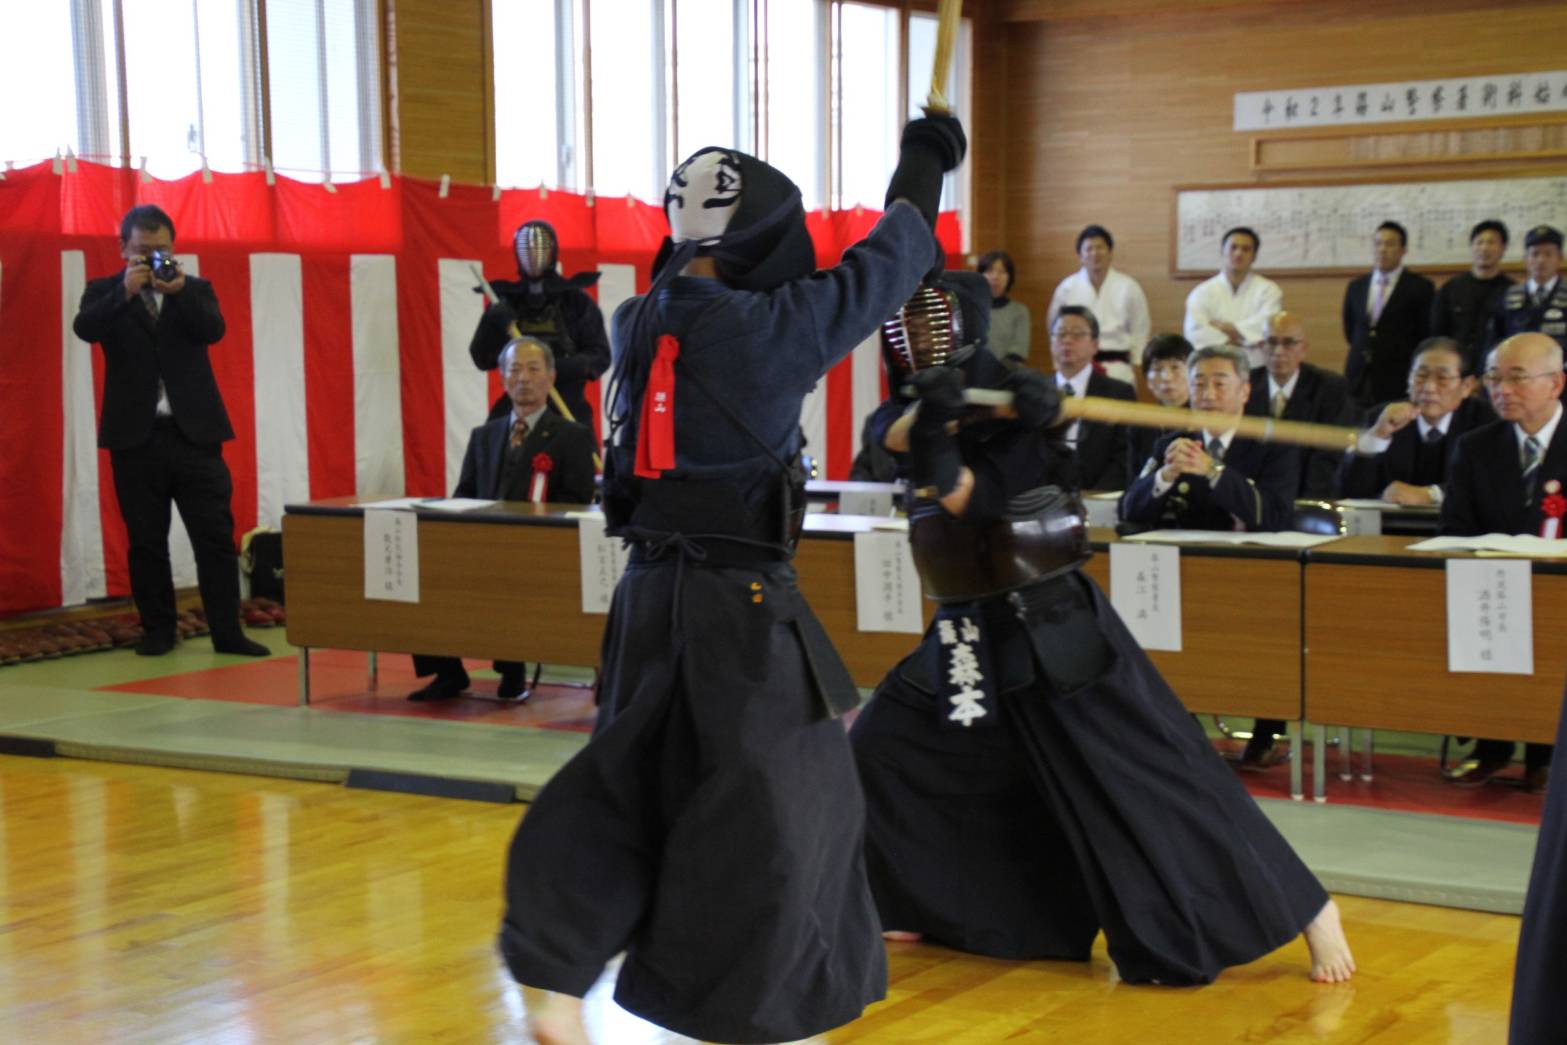 剣道の試合の様子と、それを見る術科始め式の出席者の人々の写真